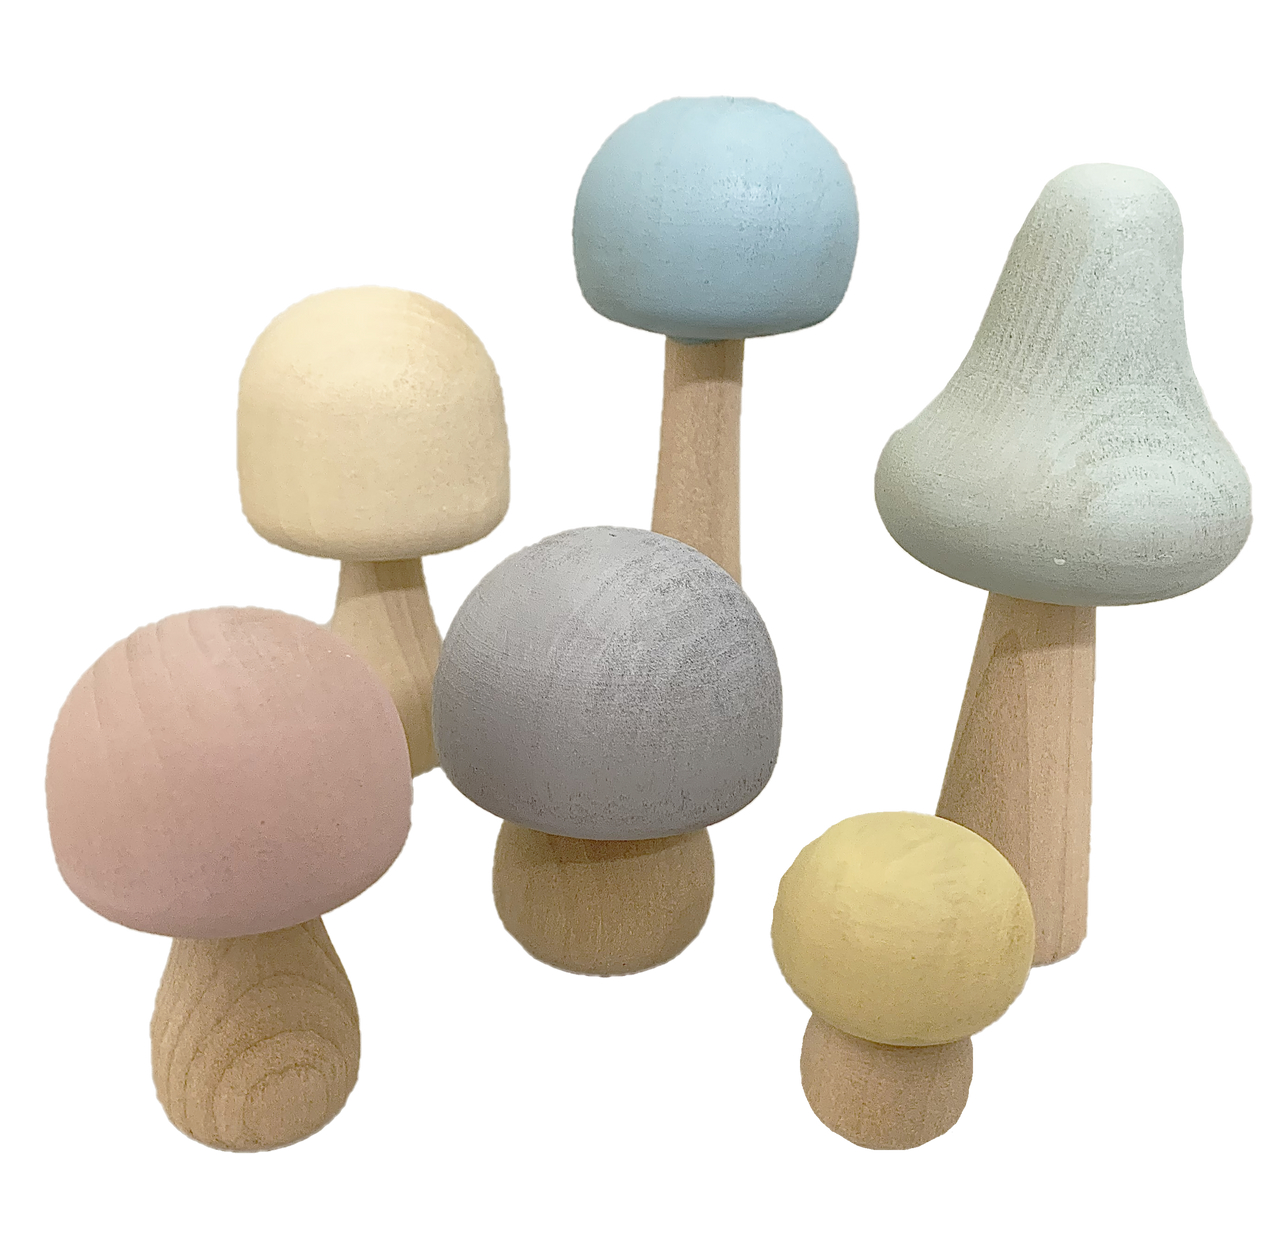 Papoose-Pastel Mushrooms 6pc